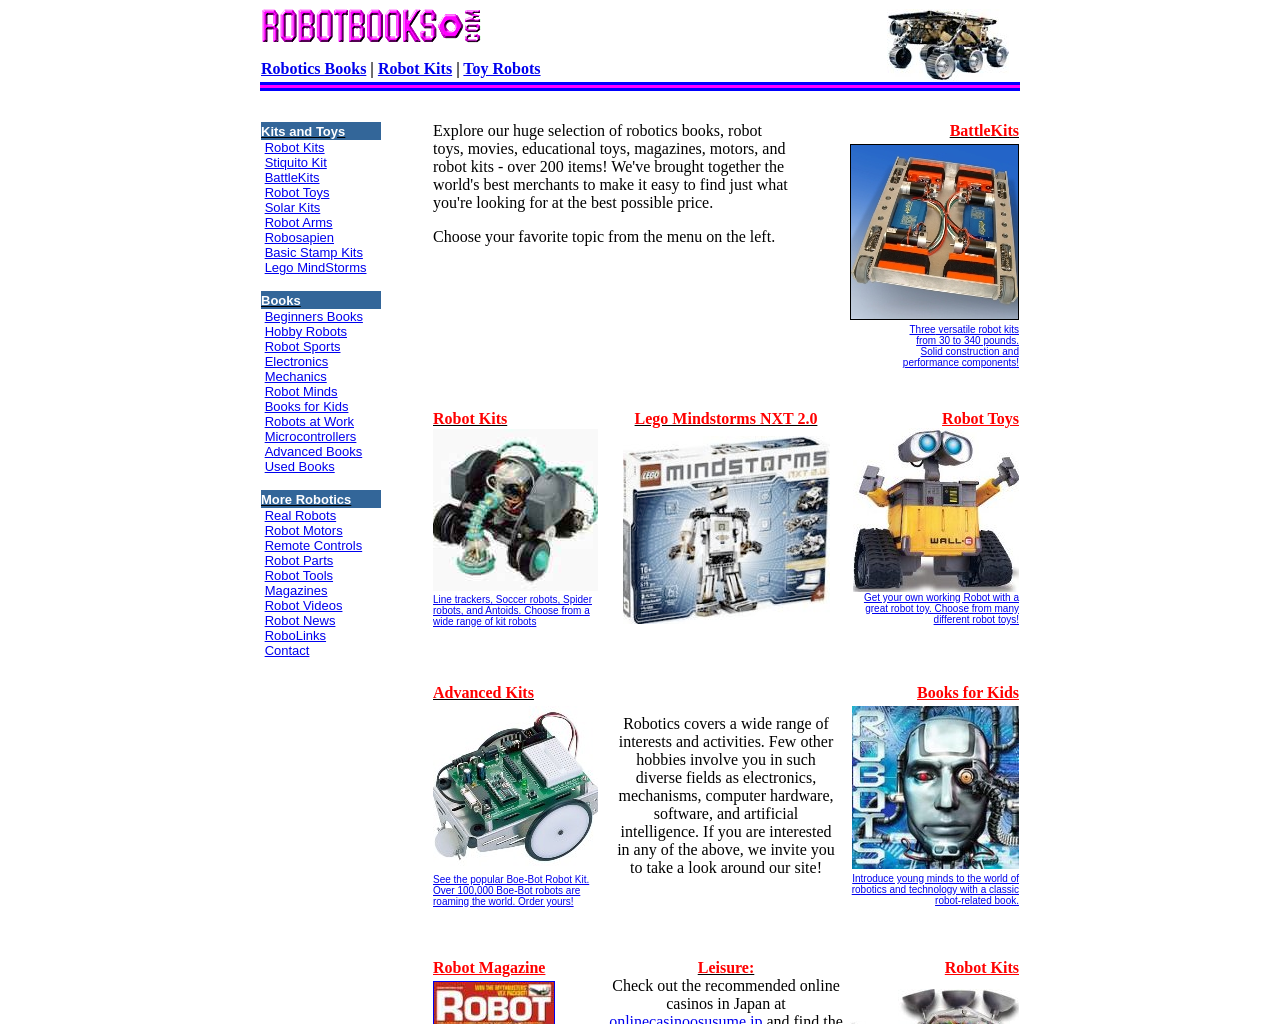 robotbooks.com